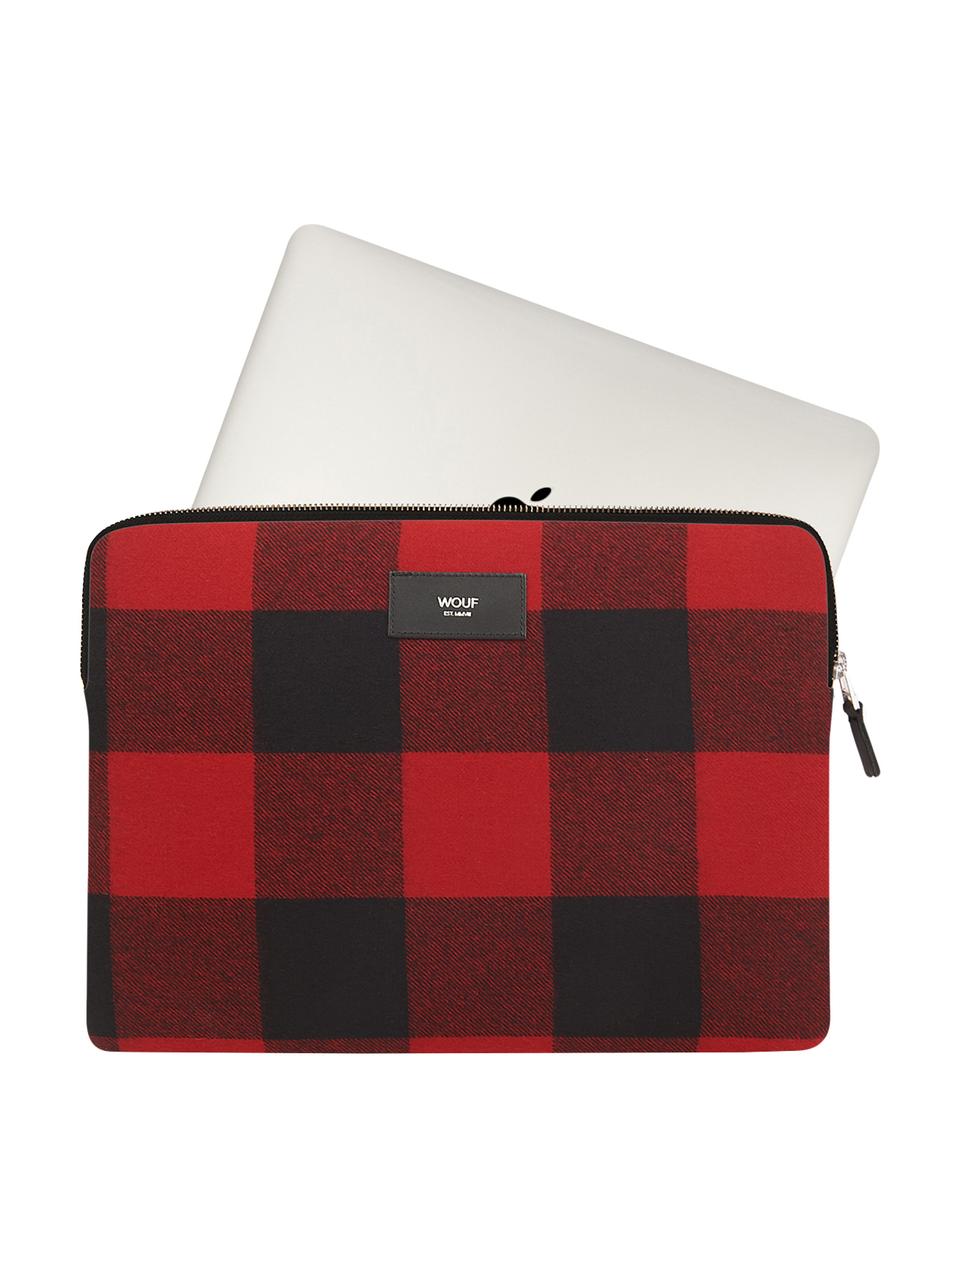 Pokrowiec na MacBook Pro 13 cali Red Jack, Bawełna, skóra, Czerwony, czarny, S 33 x W 23 cm